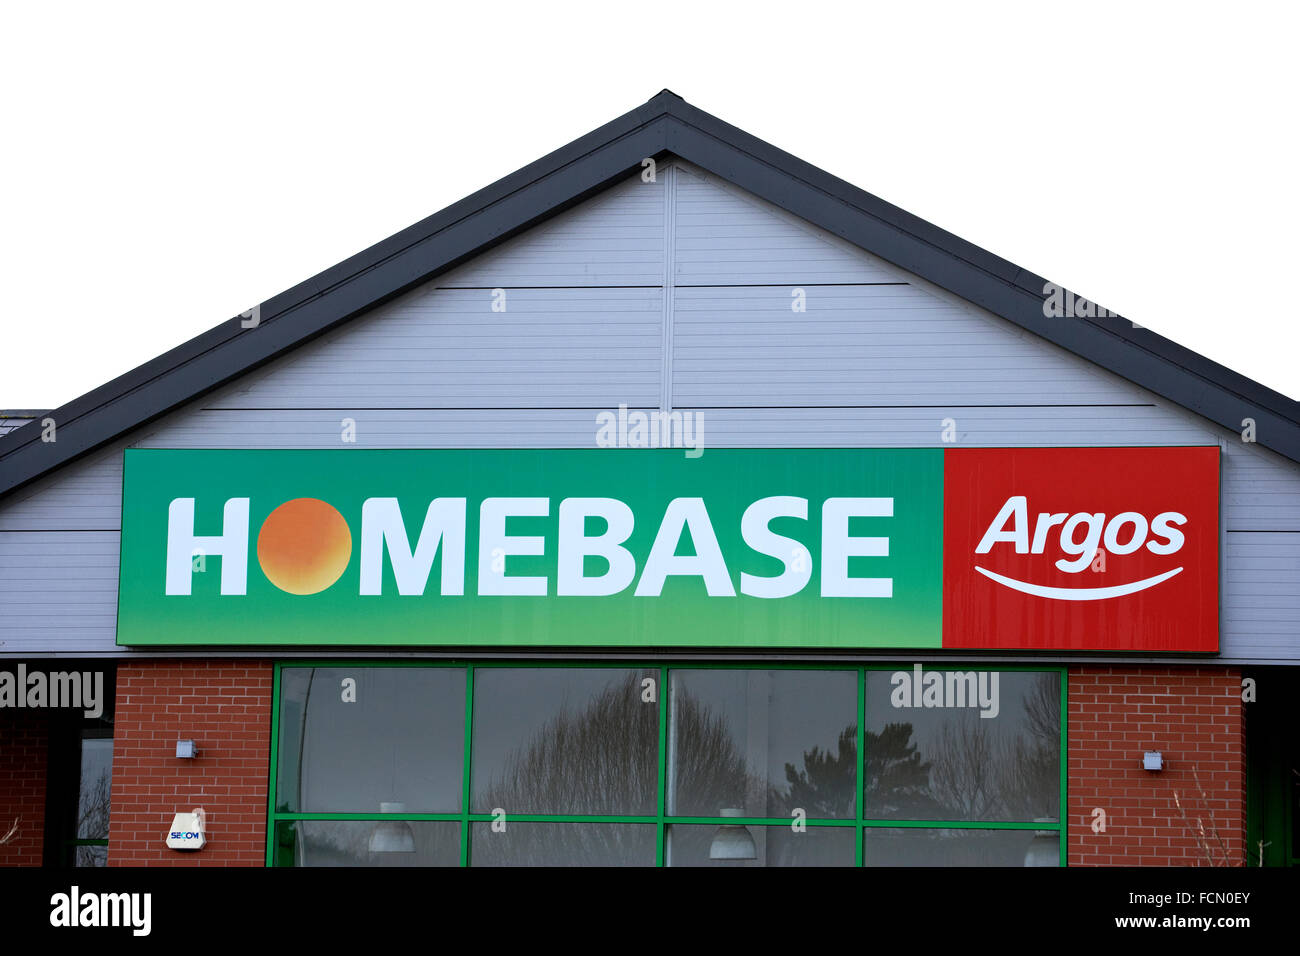 Homebase Argos sign UK Stock Photo